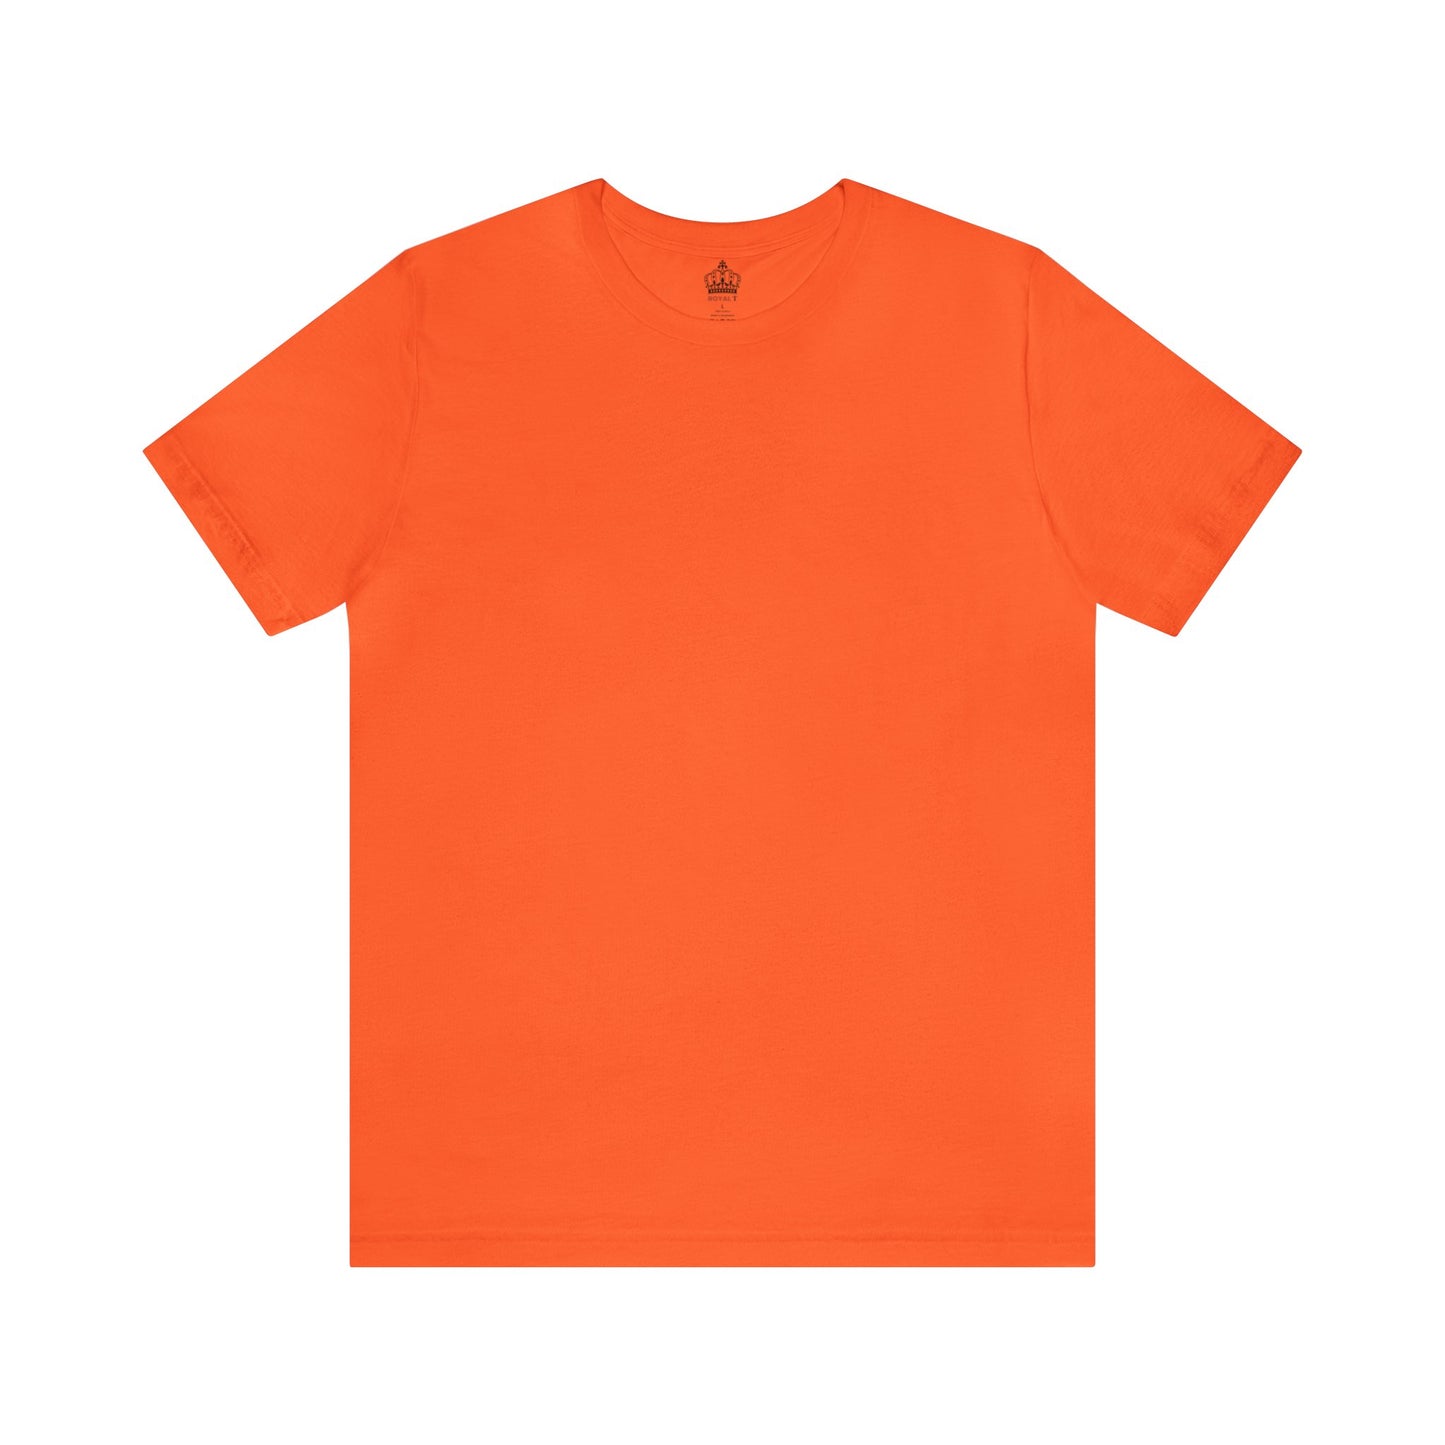 Unisex Jersey Short Sleeve Orange T Shirt